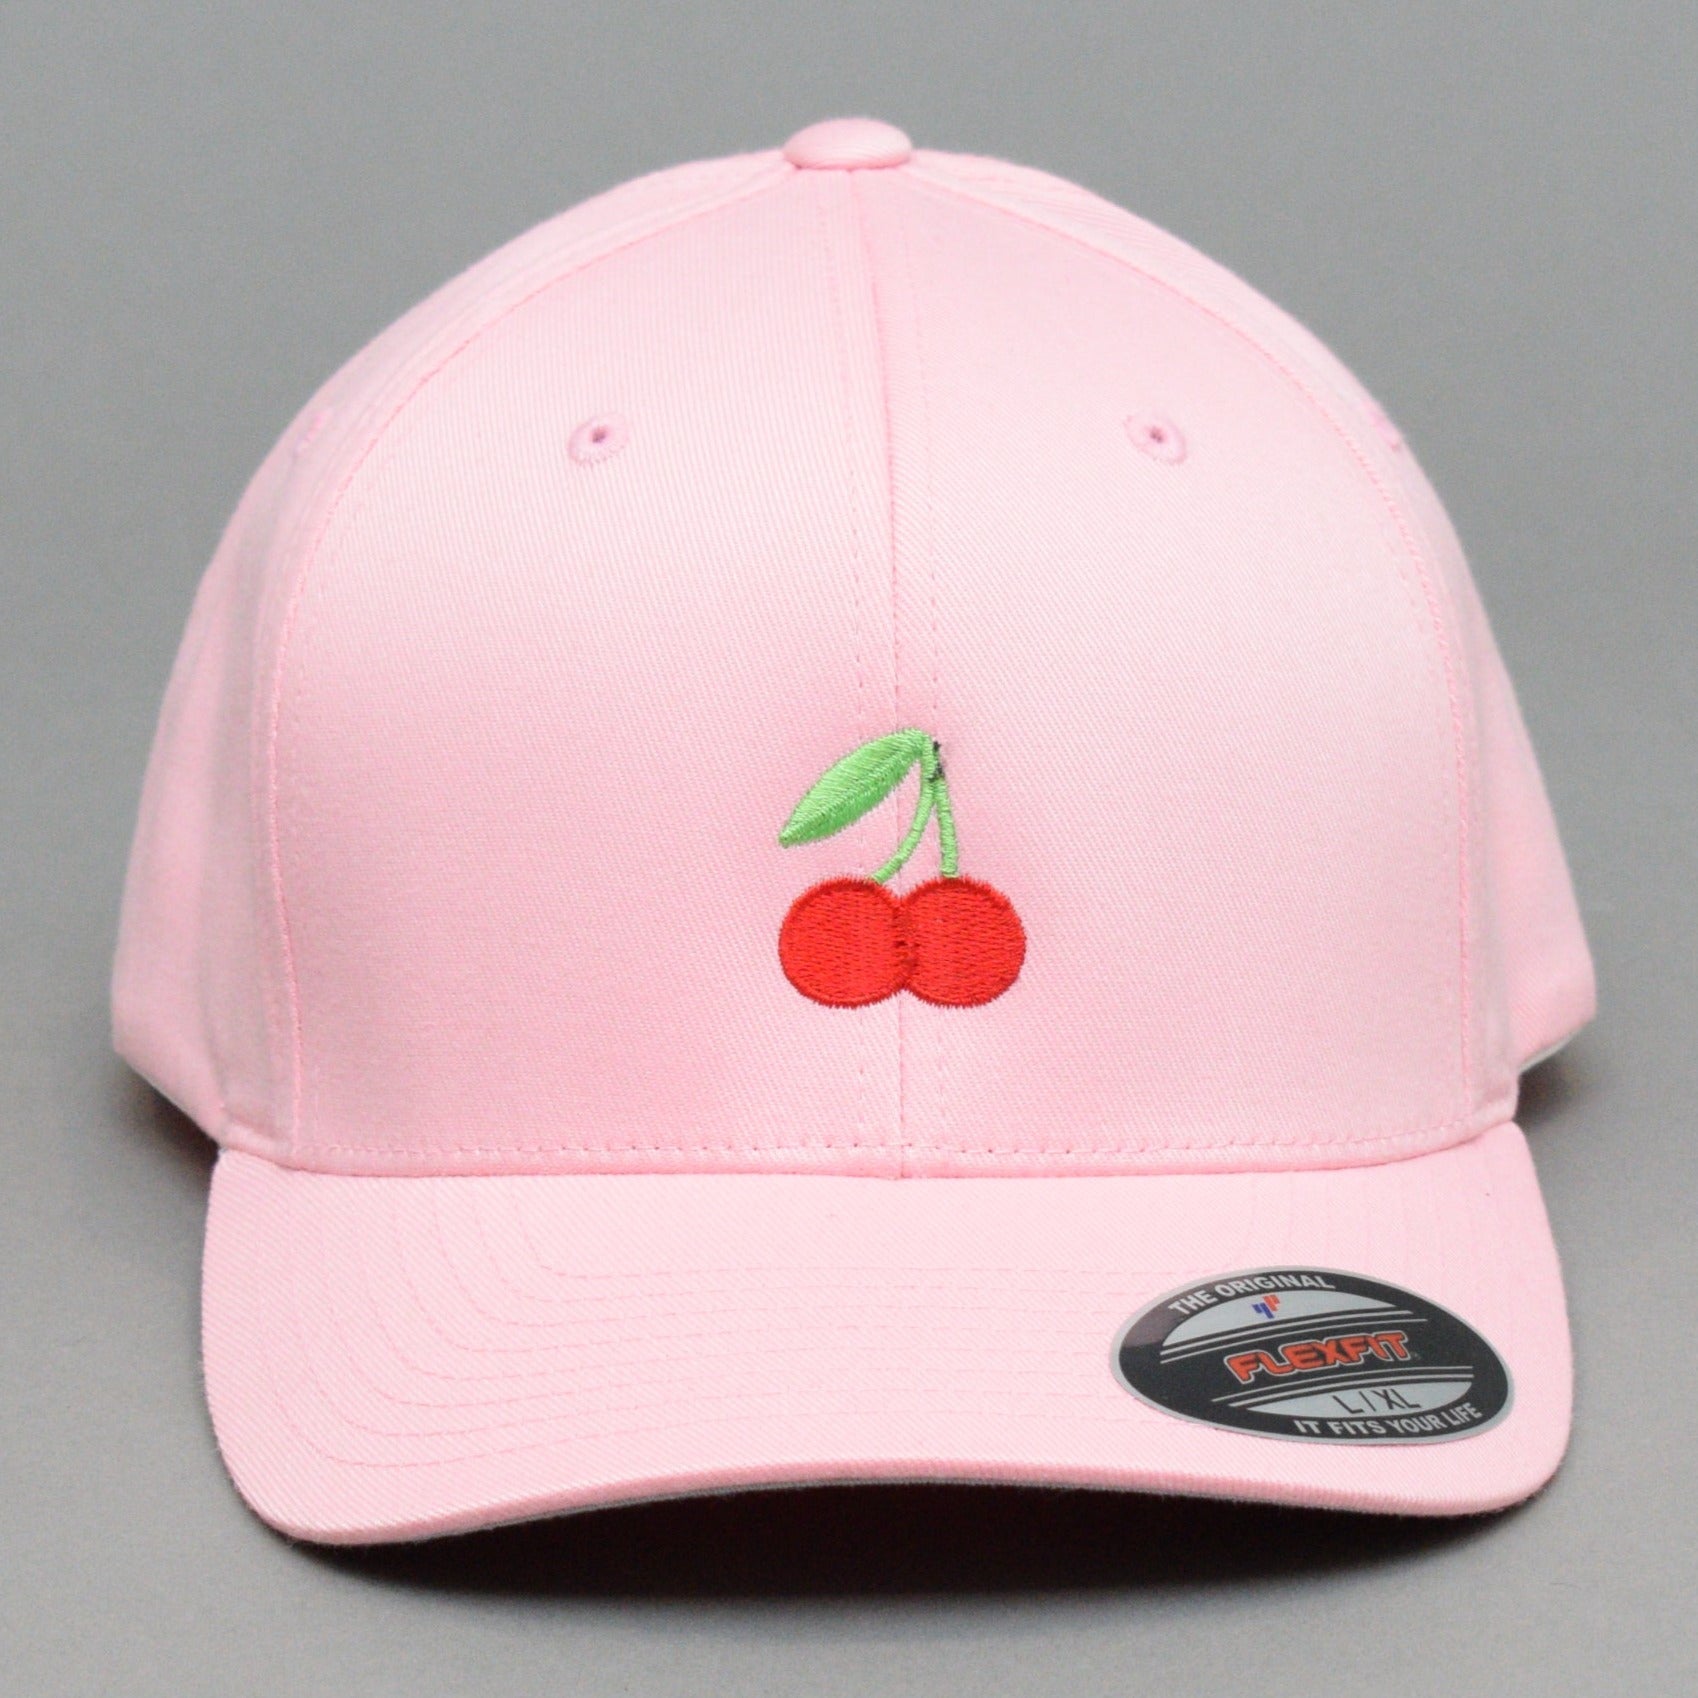 Ideal - Cherry - Flexfit - Pink